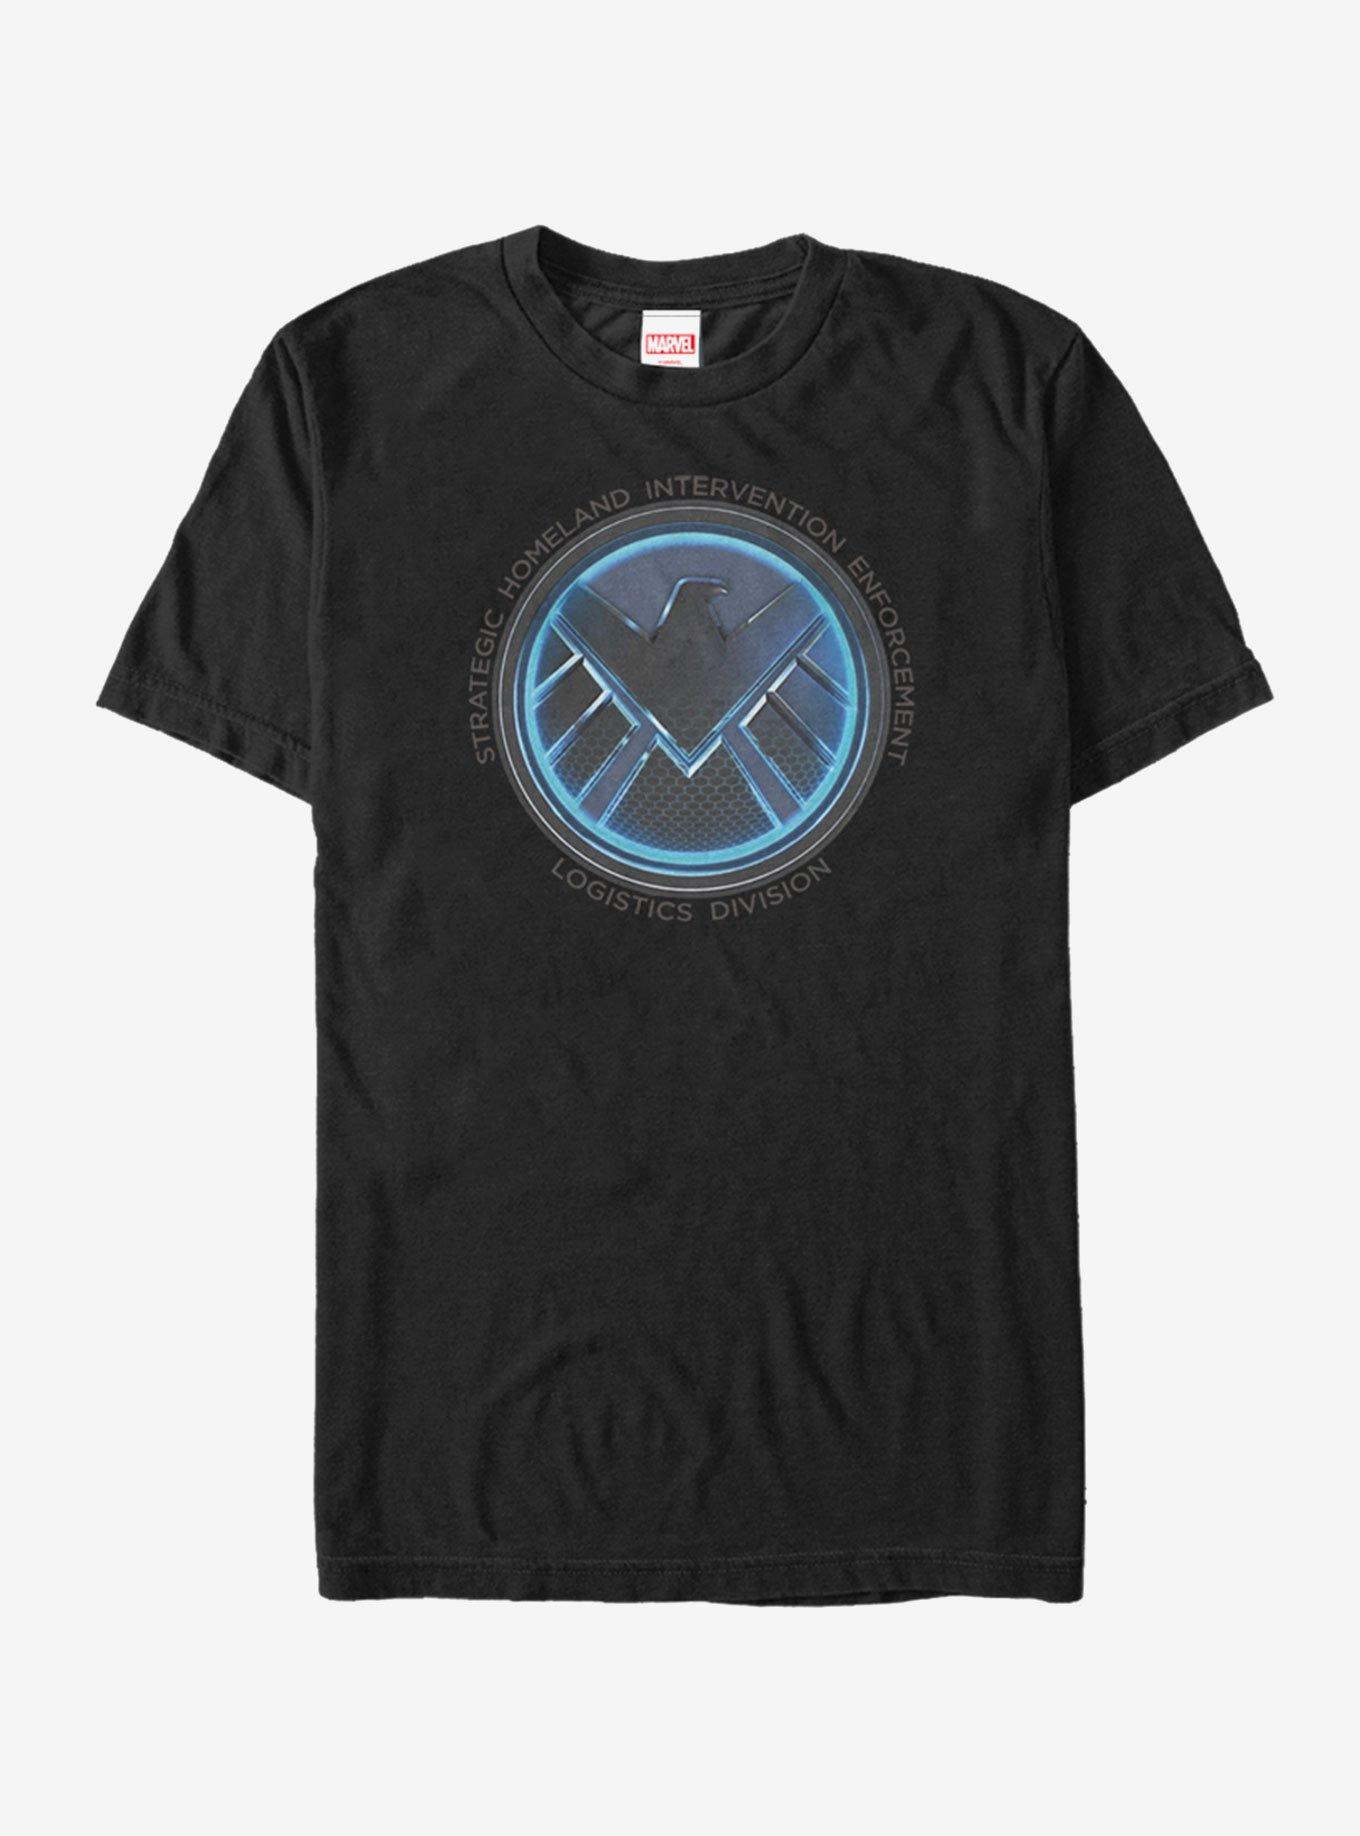 Marvel Agents of S.H.I.E.L.D. Logistics Logo T-Shirt, , hi-res